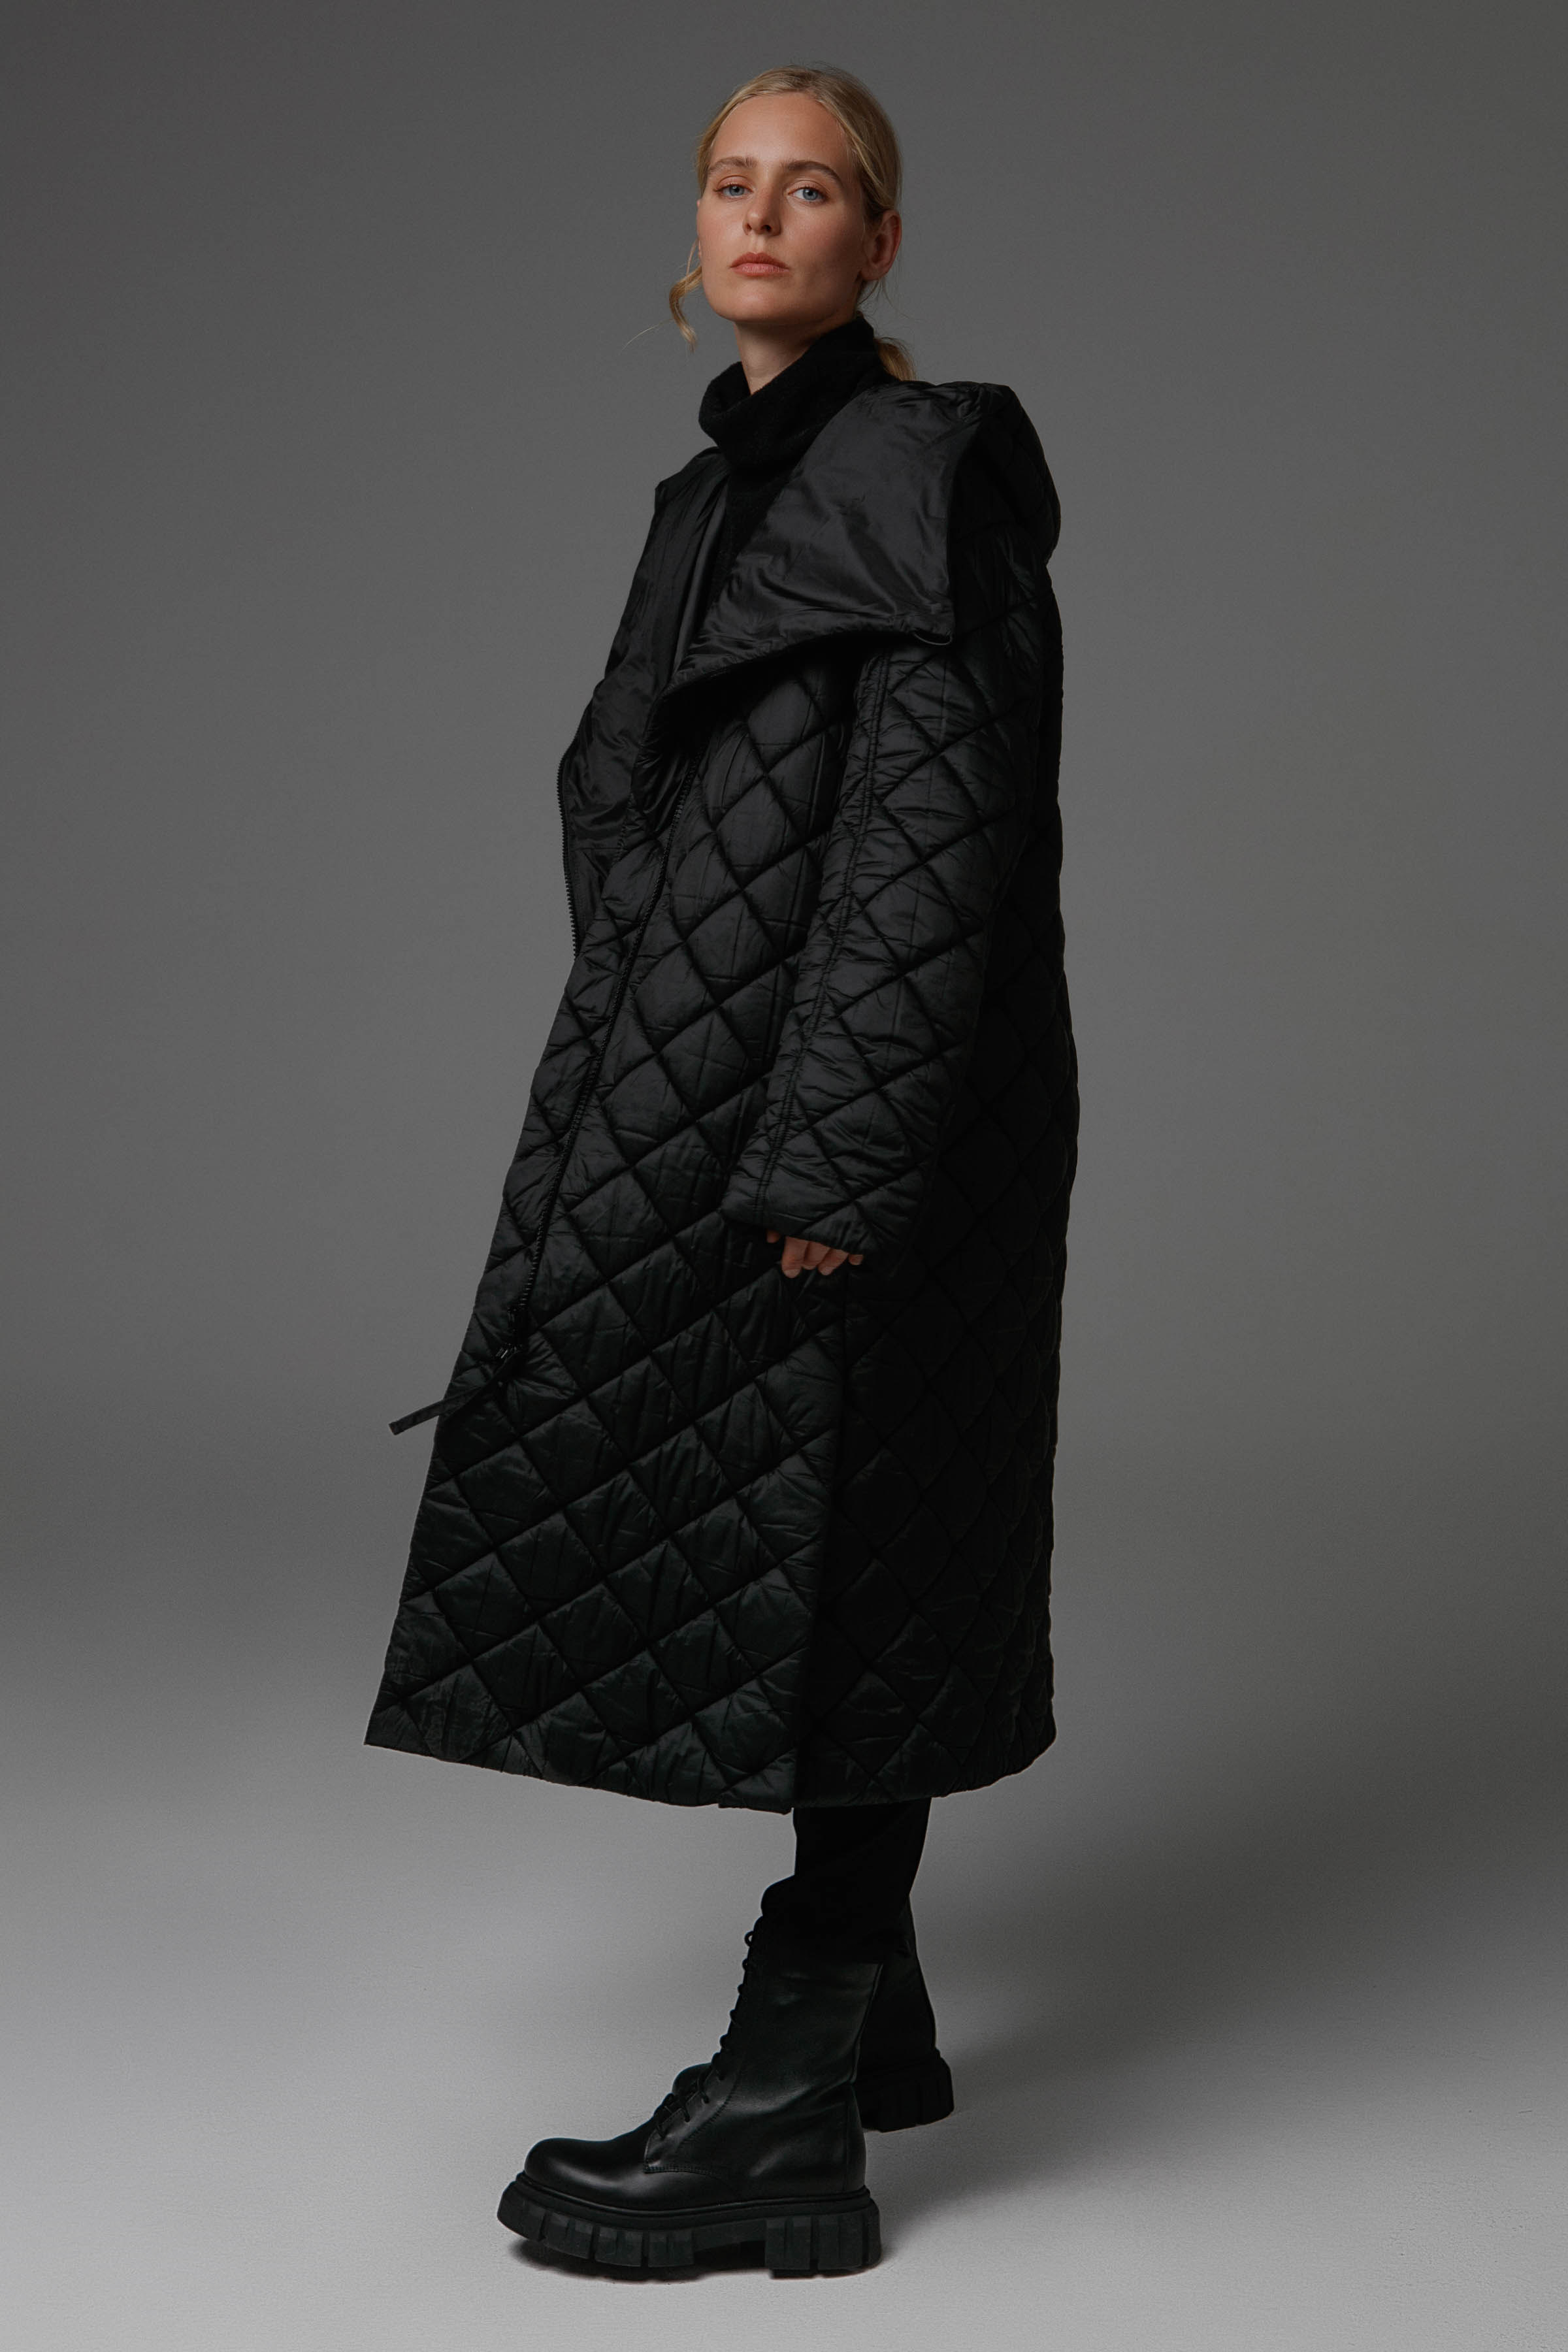 Пальто стеганое среднее, малые ромбы 00 Черный (noir) от Lesel (Лесель)! Заказывайте по ✆ 8 (800) 777 02 37